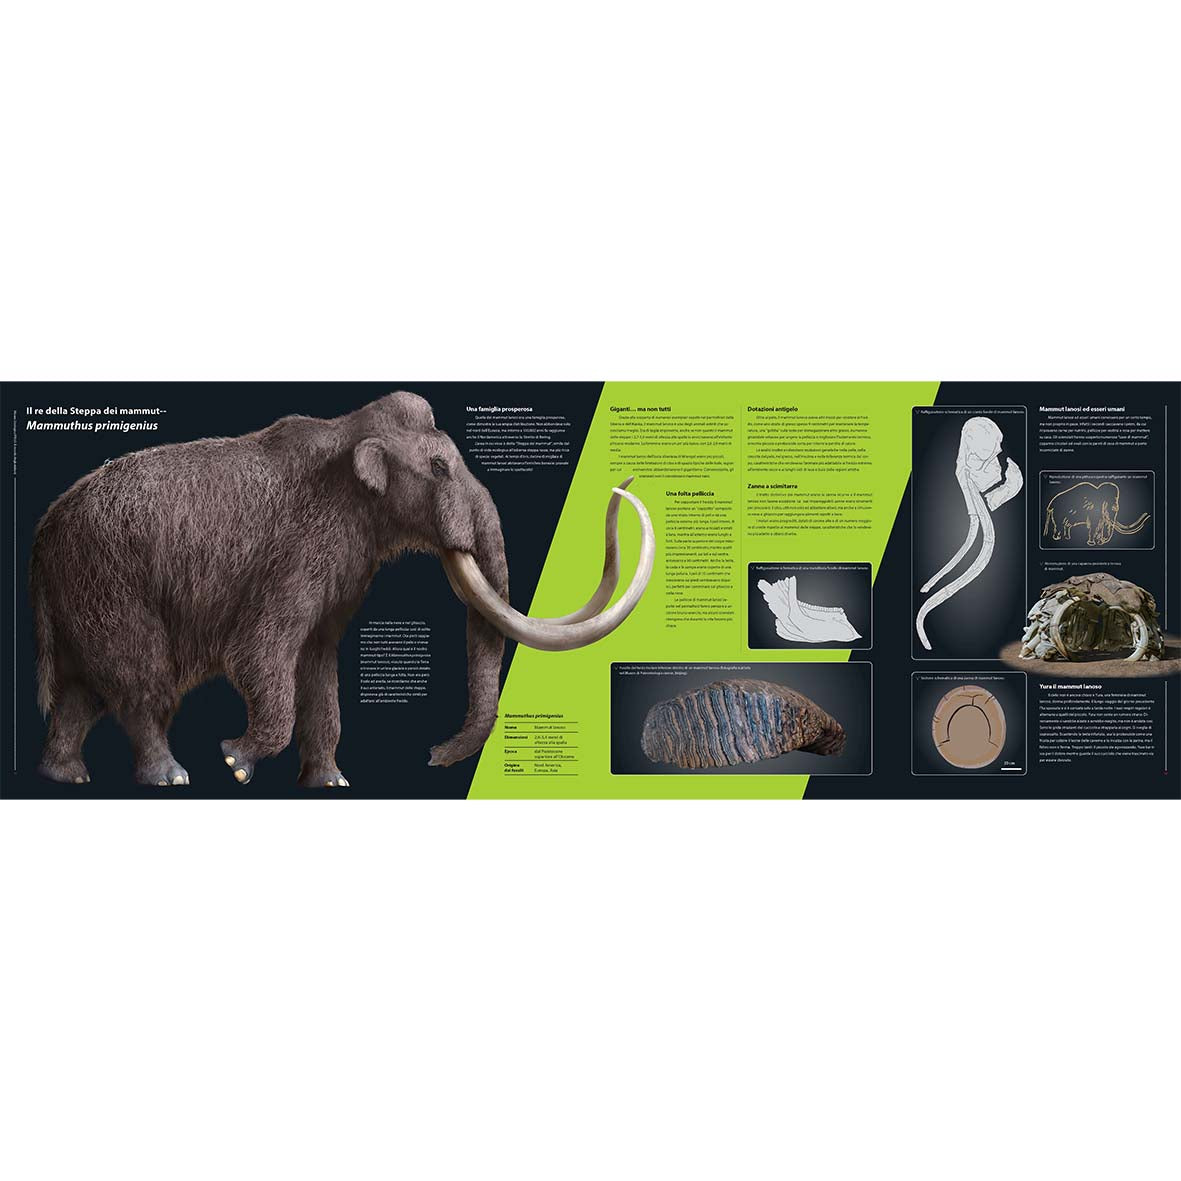 Sulle orme dei mammut - Dai primi proboscidati agli elefanti di oggi